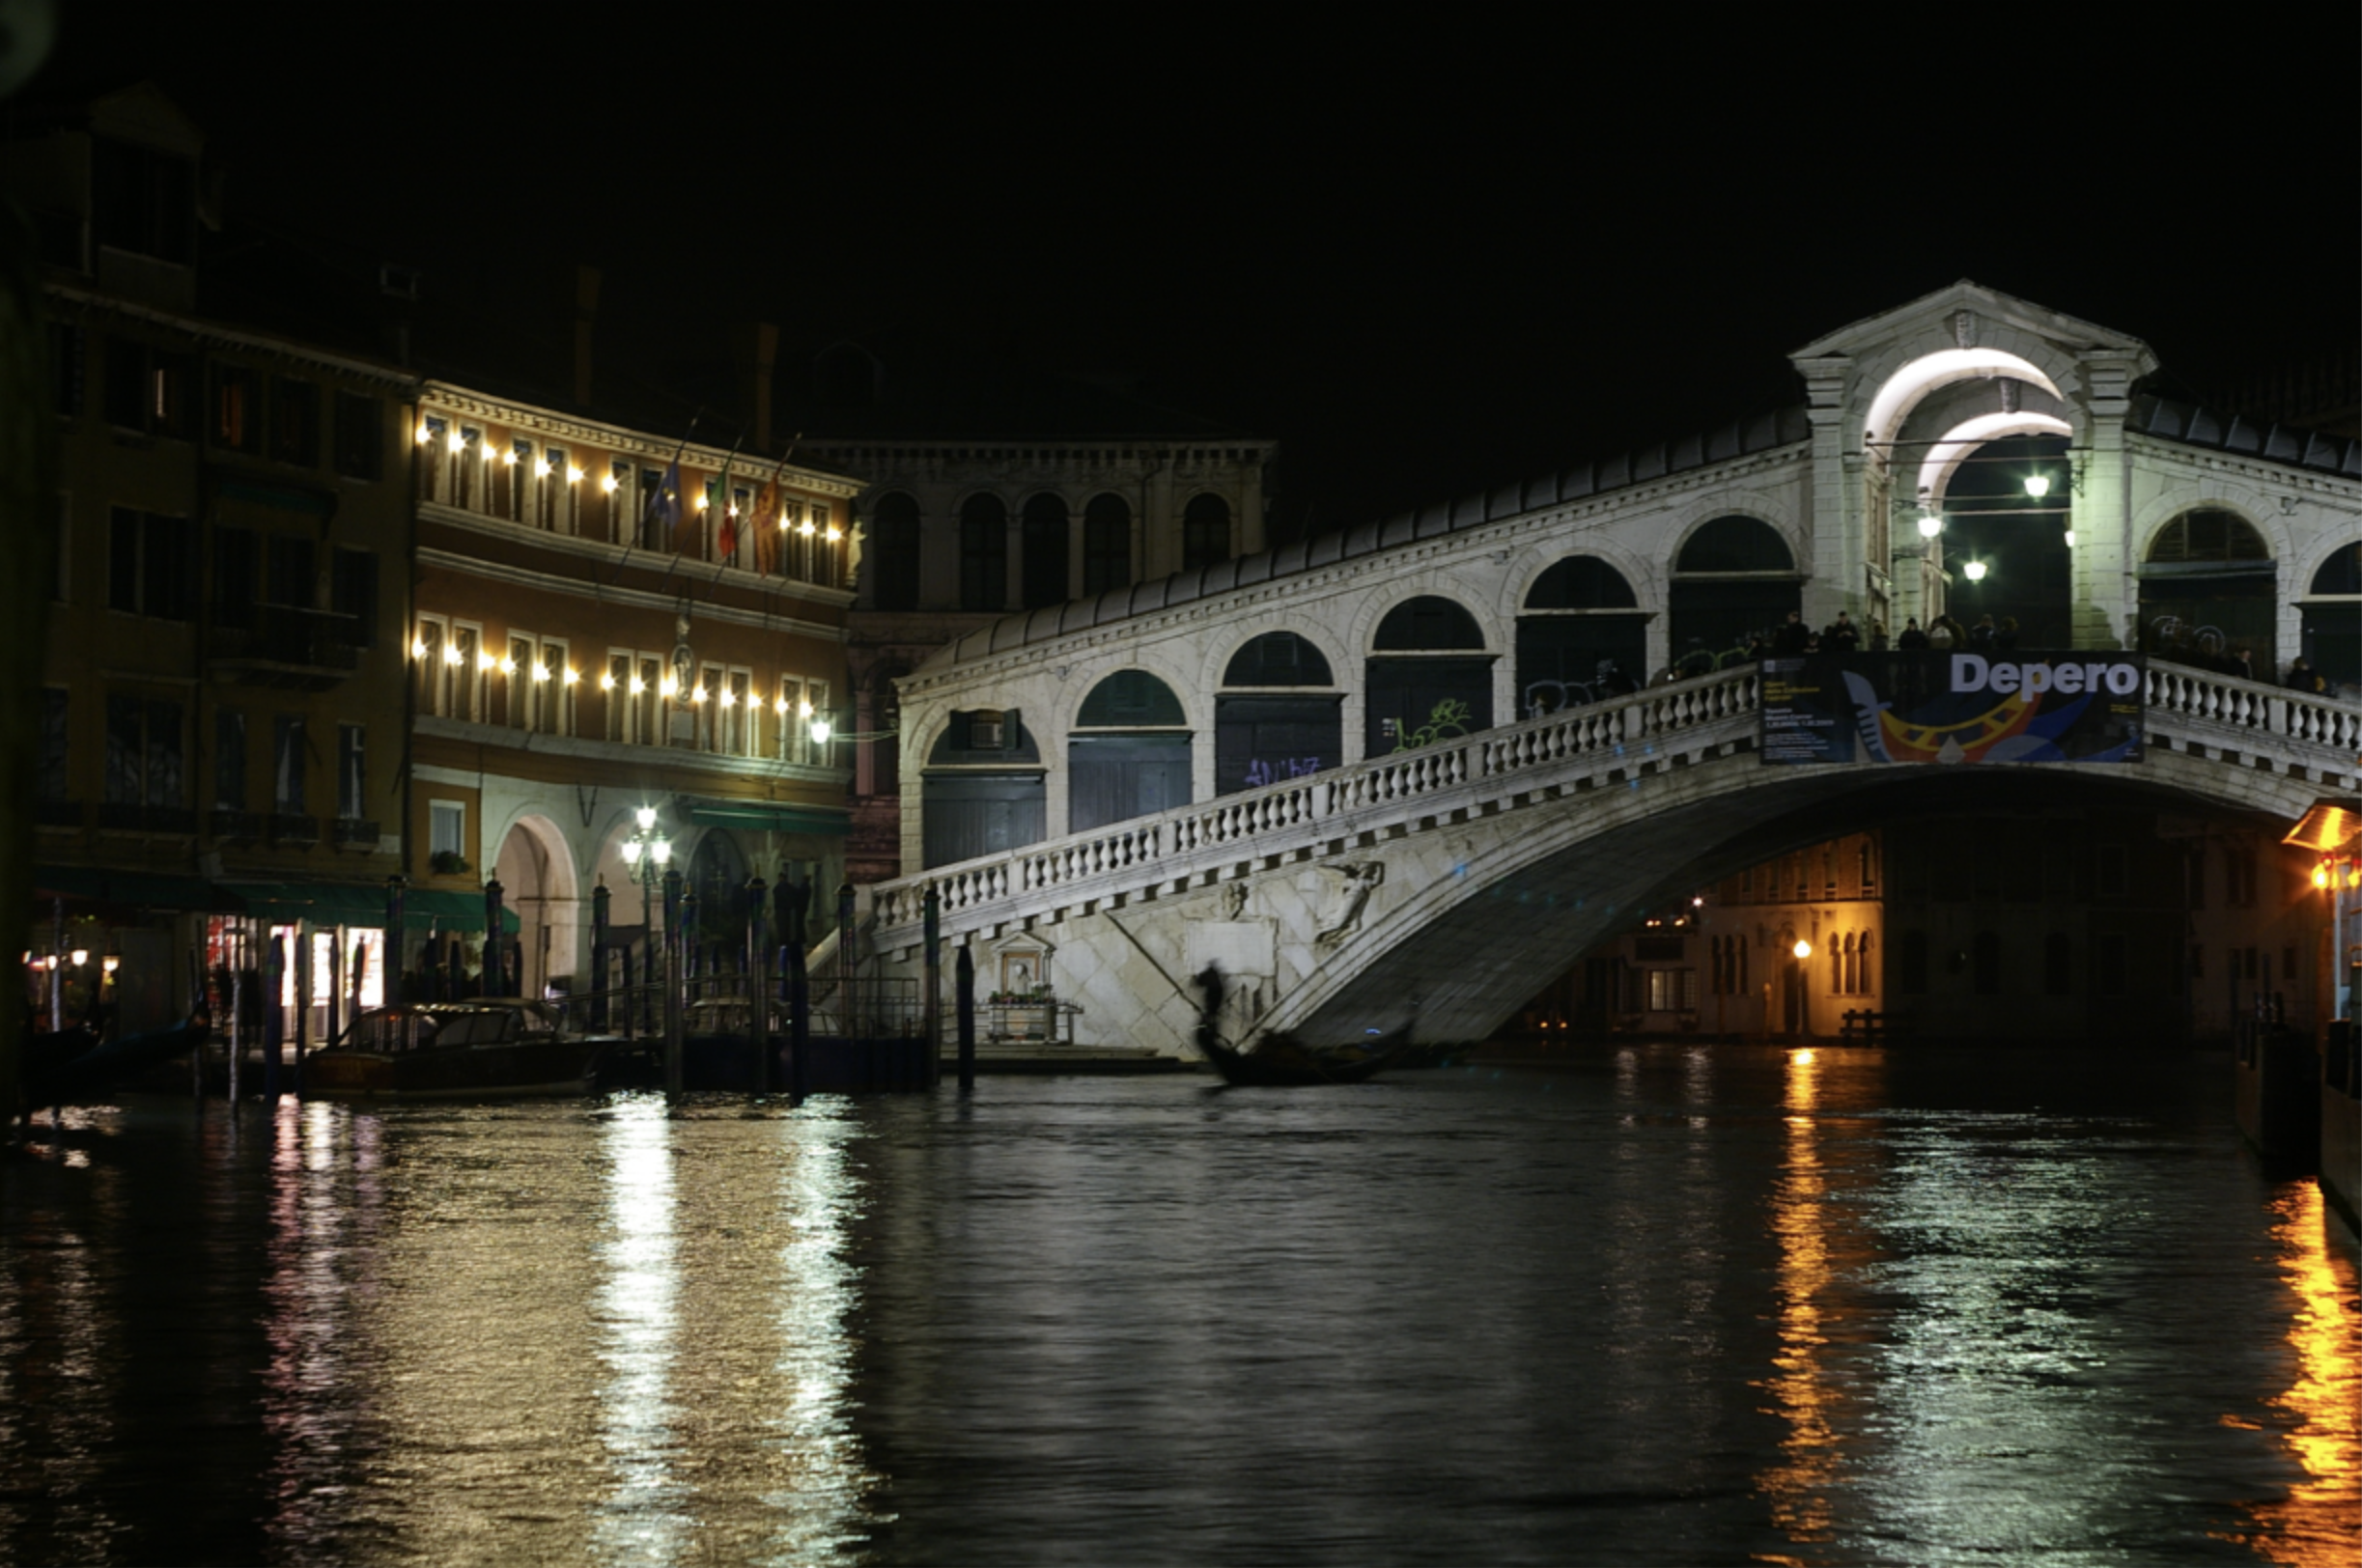 The Photo Art of 'Venezia e Napoli' 10.png